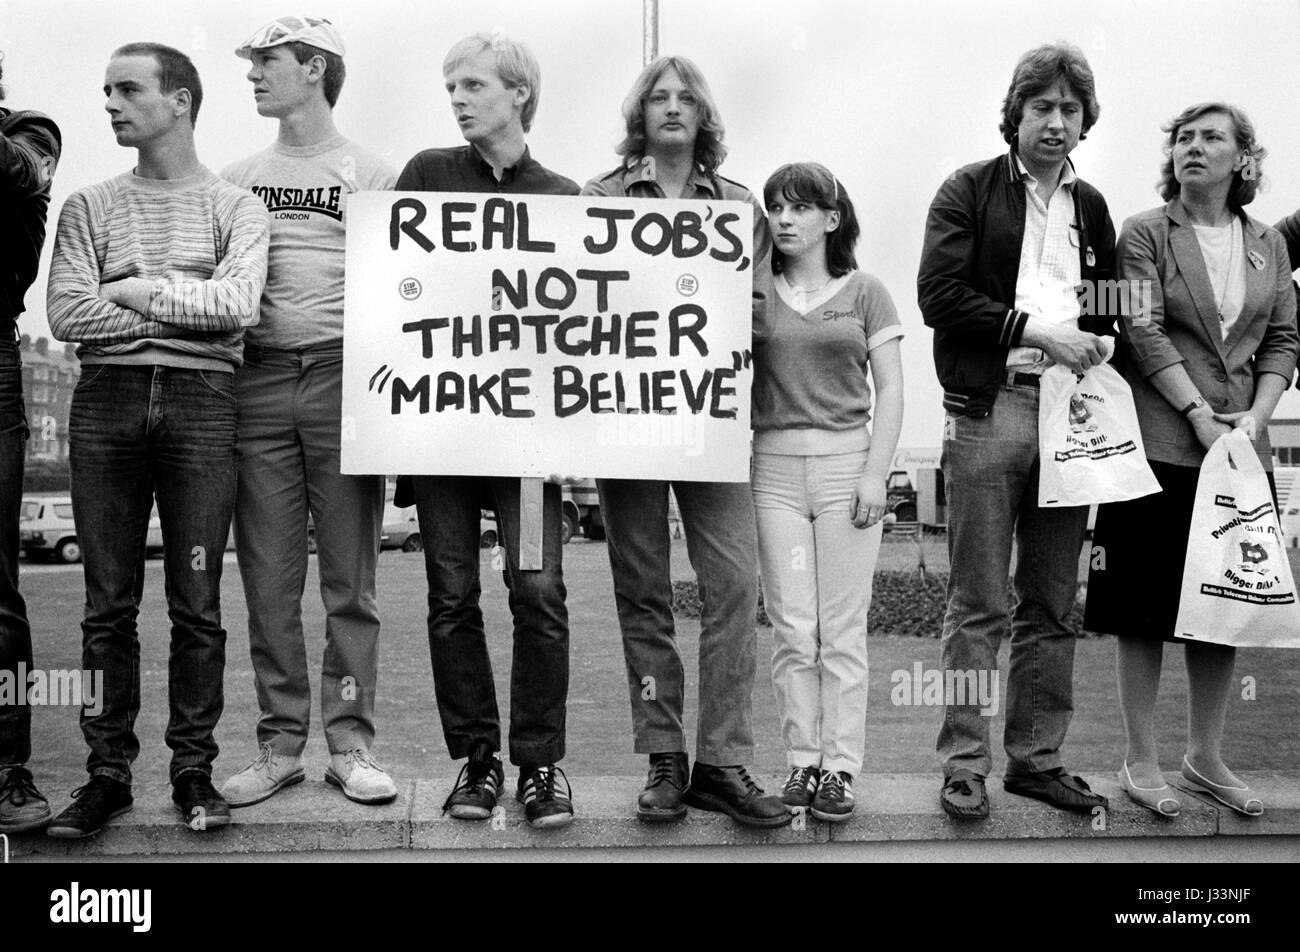 Élection générale 1983 UK. Les étudiants et les jeunes adultes manifester contre le manque de perspectives d'emploi en Grande-Bretagne sous le premier ministre Margaret Thatcher. Démonstration sans emploi au sujet d'idée pour l'école. L'Angleterre des années 80, "de vrais emplois Thatchers pas faire croire'. HOMER SYKES Banque D'Images